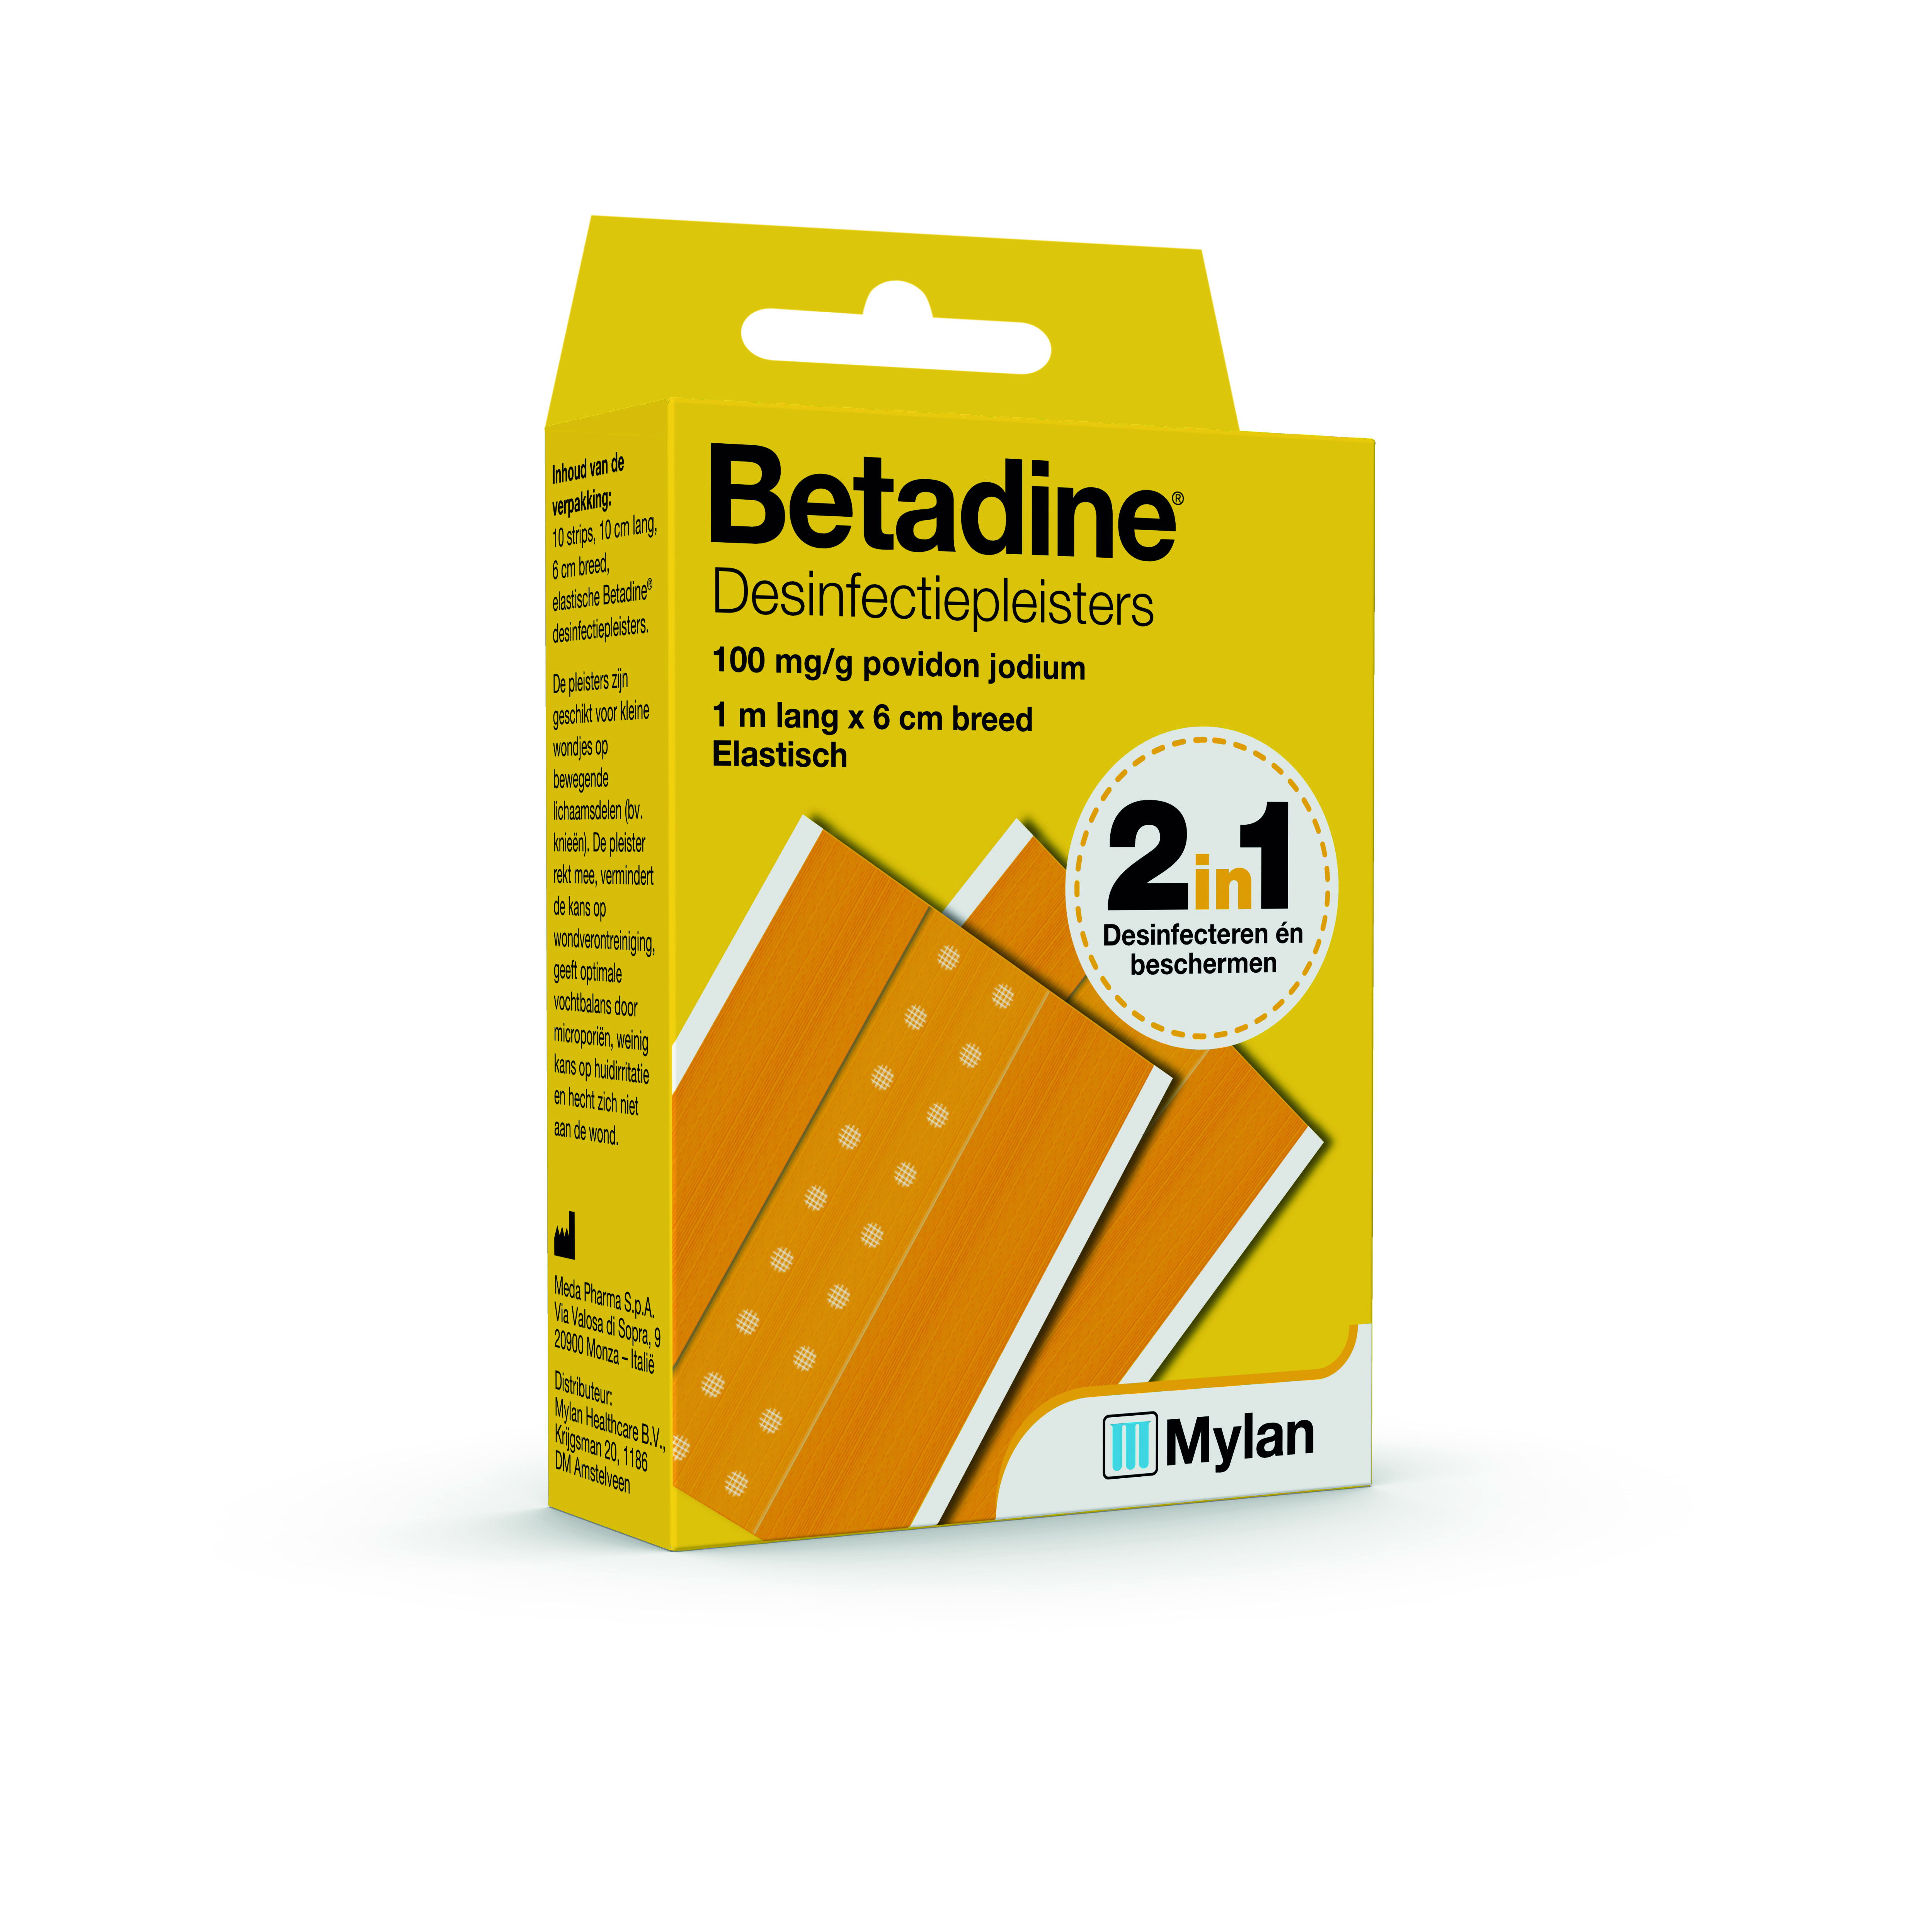 Oppositie druk ondersteboven Betadine Desinfectiepleister / Wonden desinfecteren en beschermen